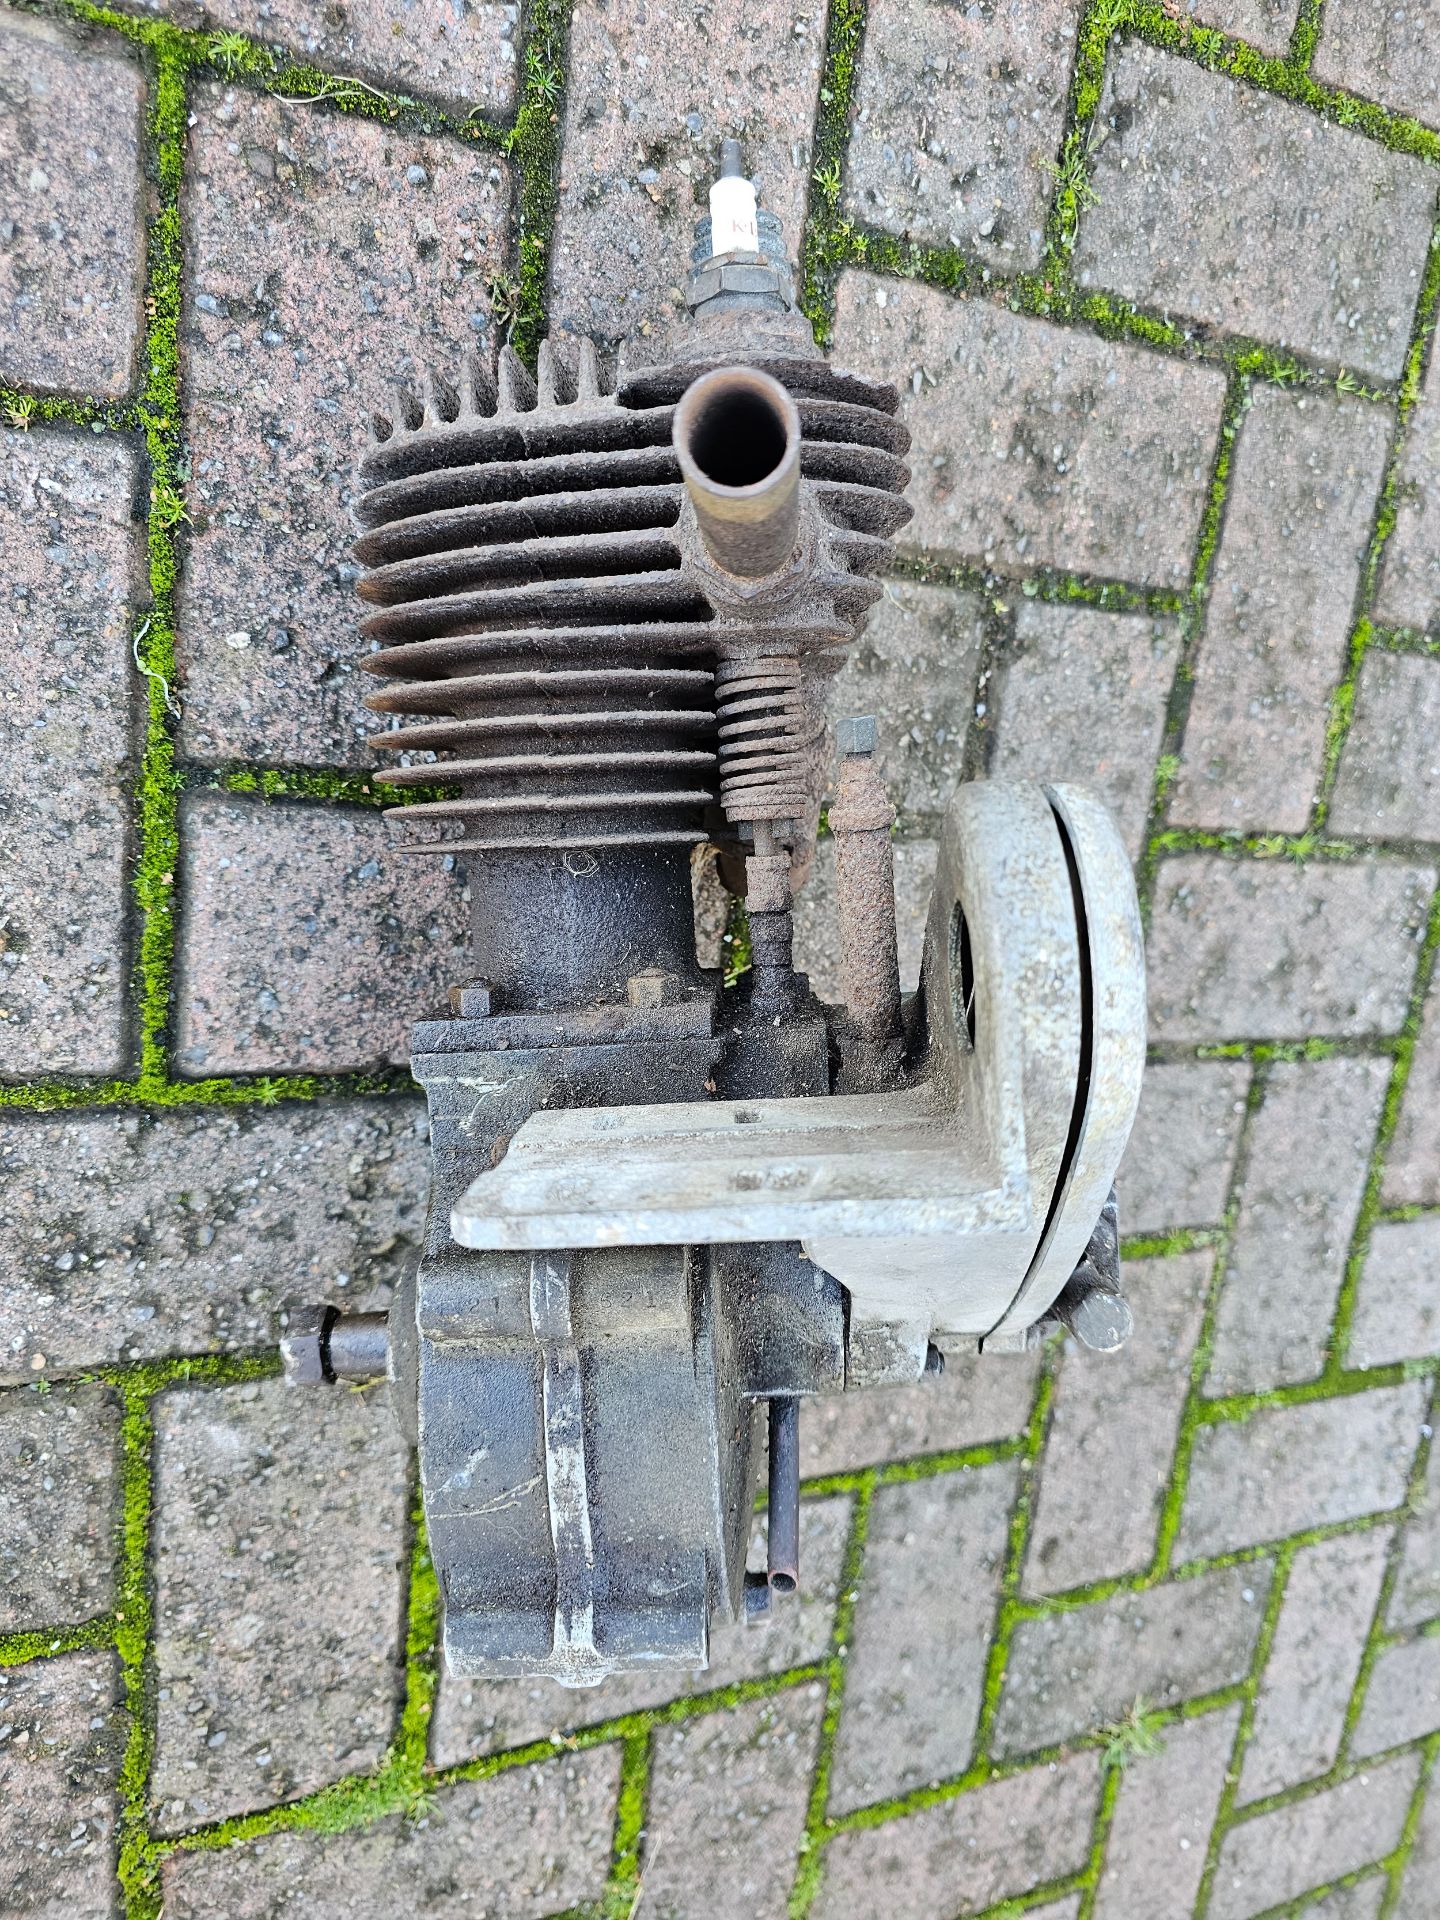 A 1930 JAP SV engine, believed 200cc, number 8C 169 2 200, N/W 80169*M - Image 2 of 6